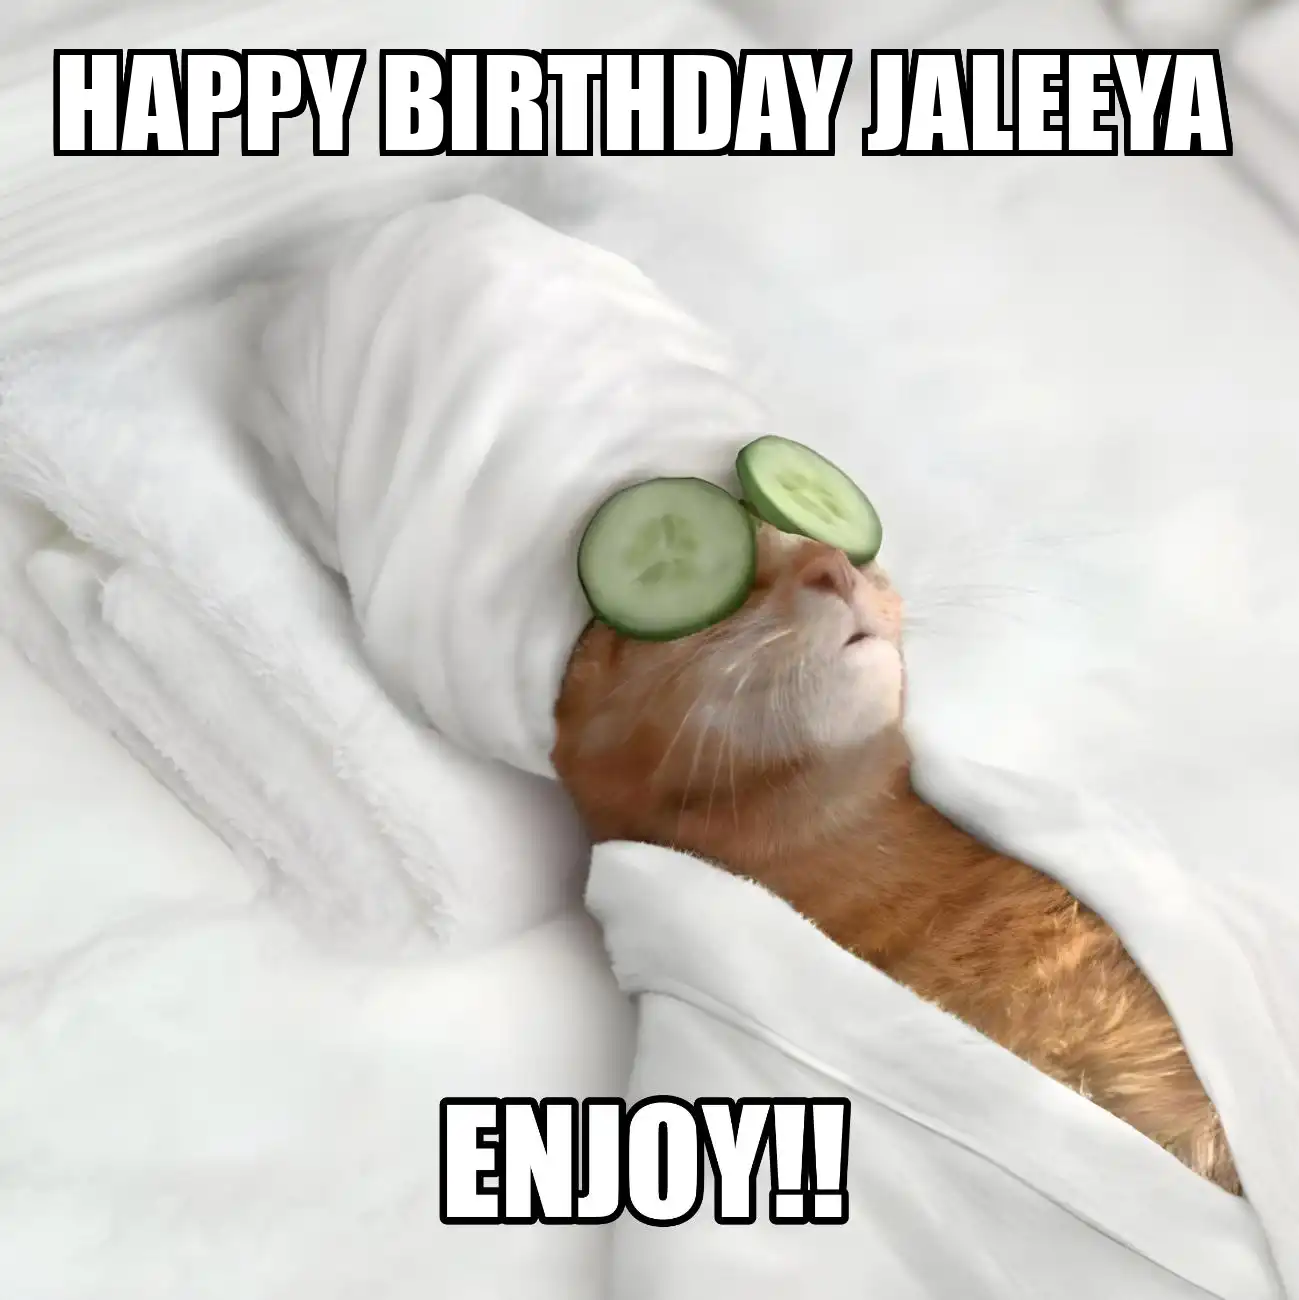 Happy Birthday Jaleeya Enjoy Cat Meme